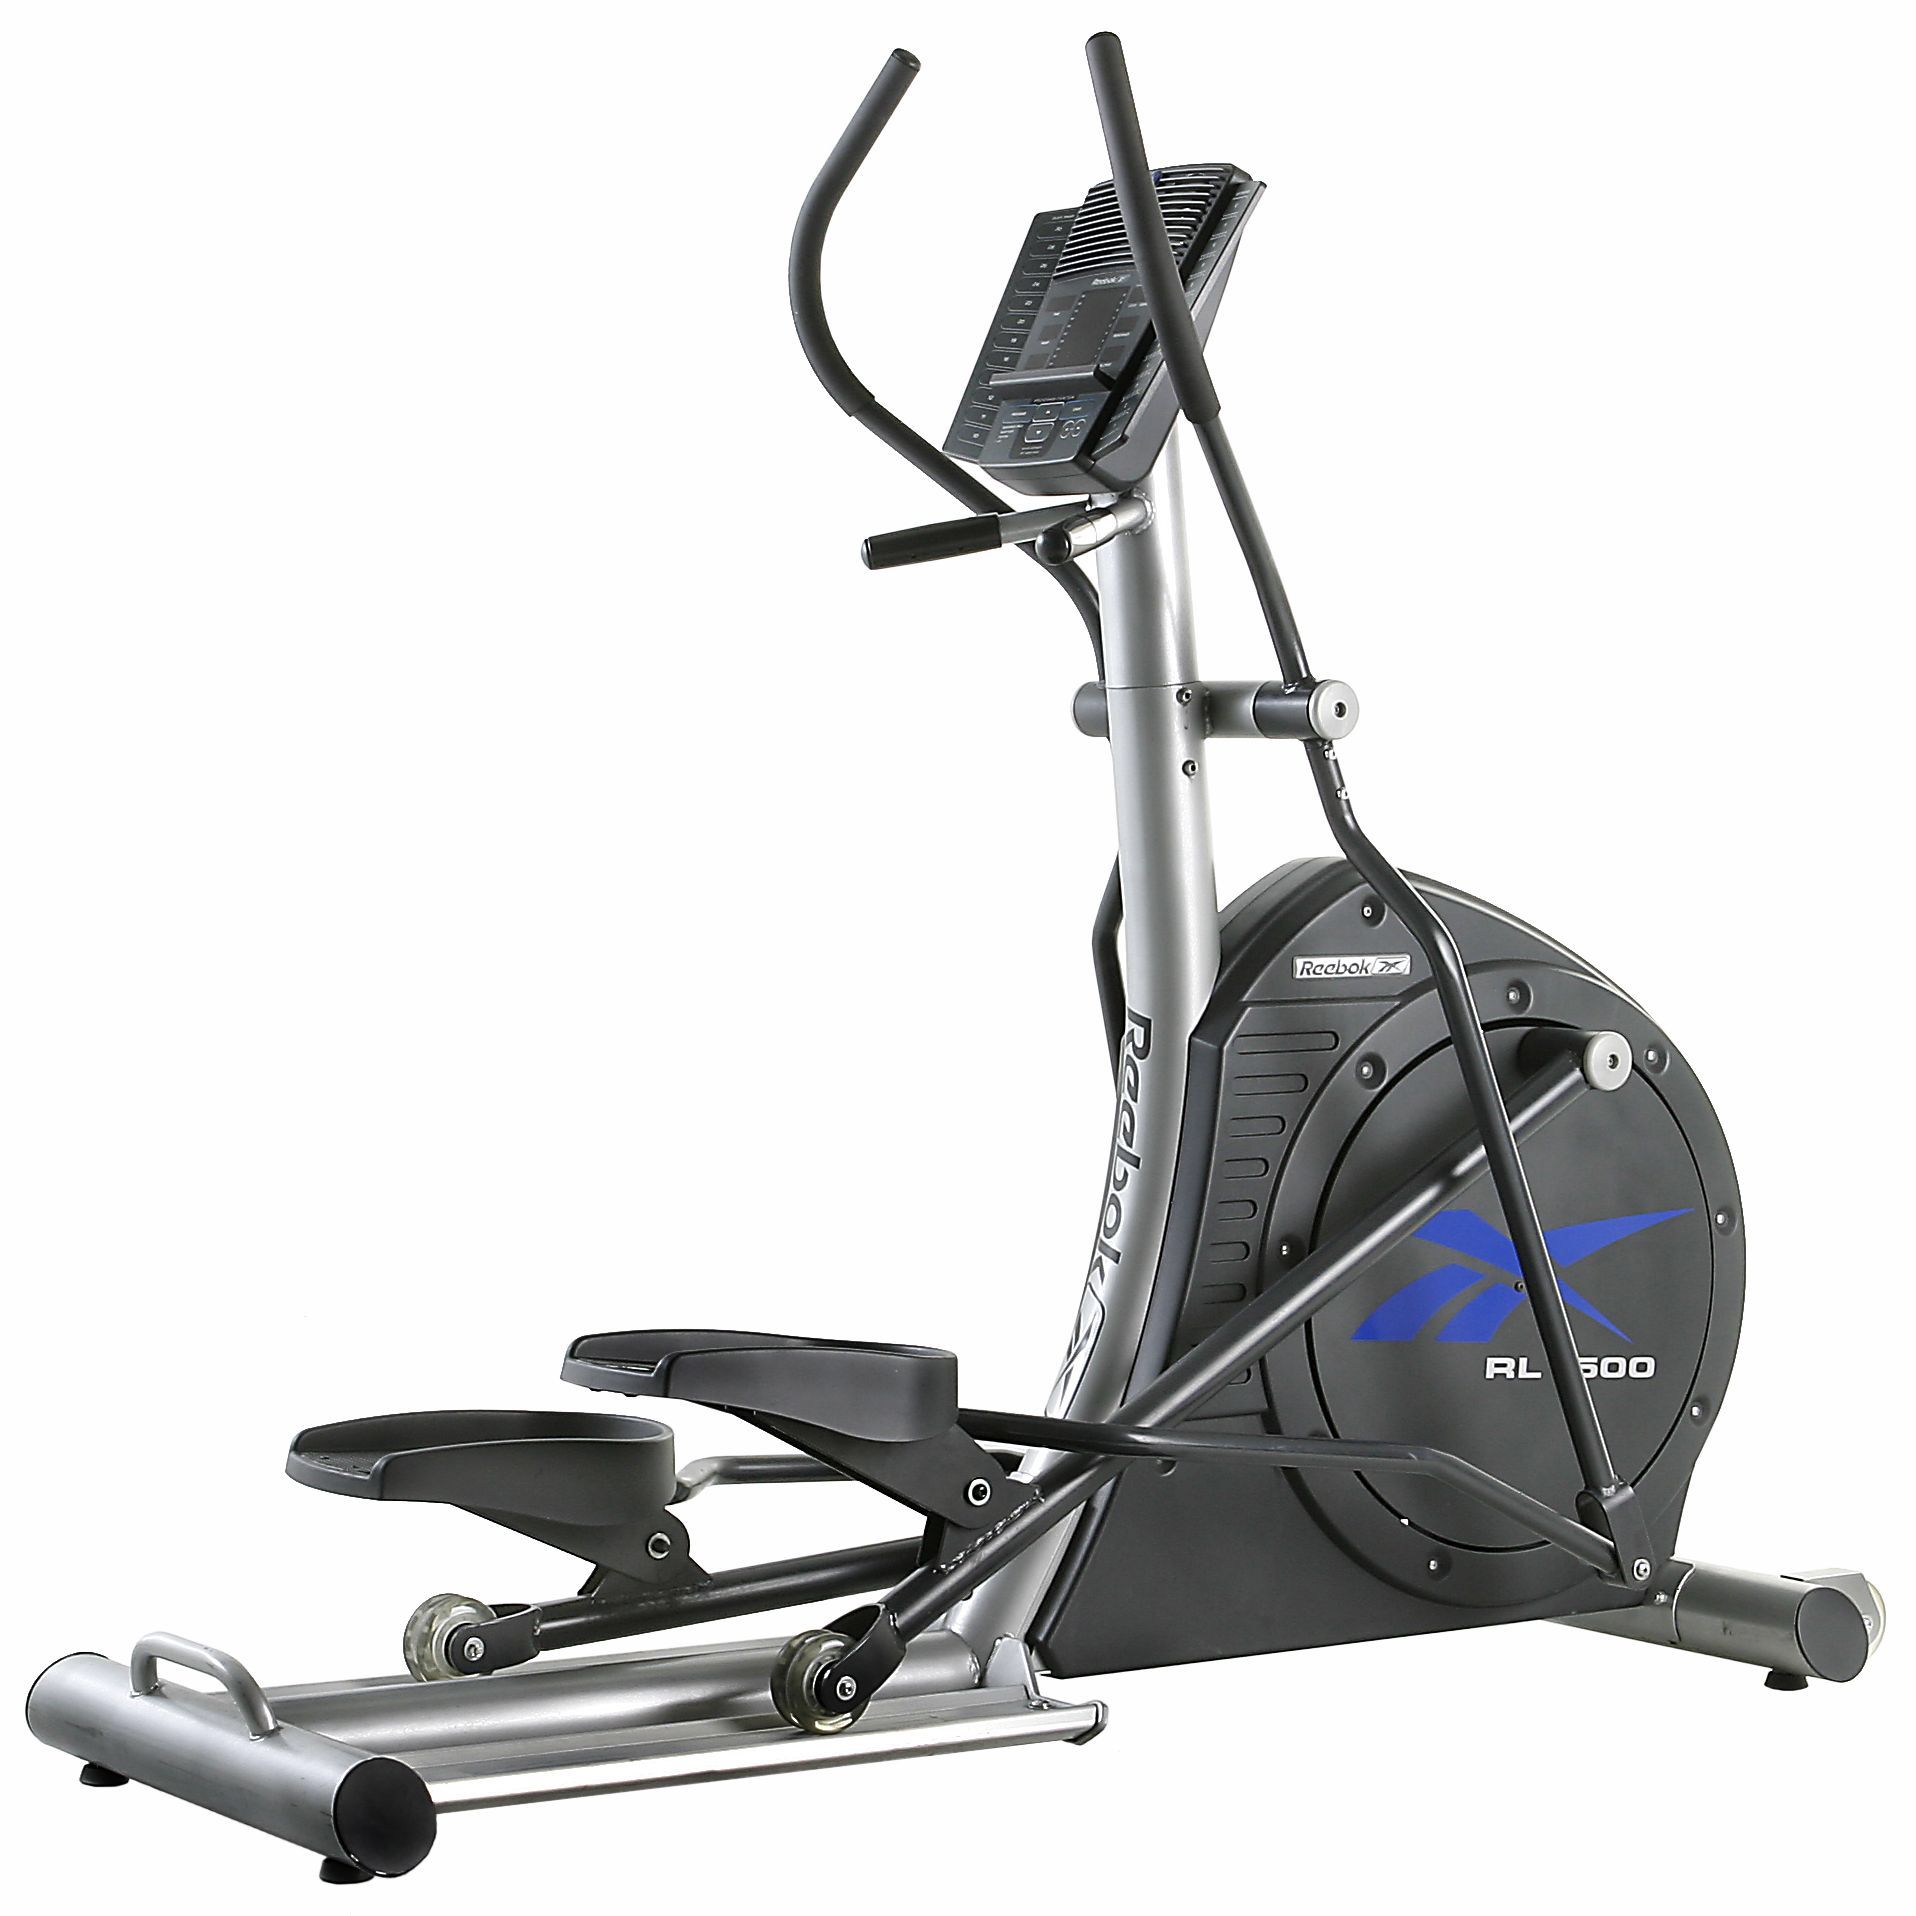 Elliptical exercise machine -Reebok RL1500